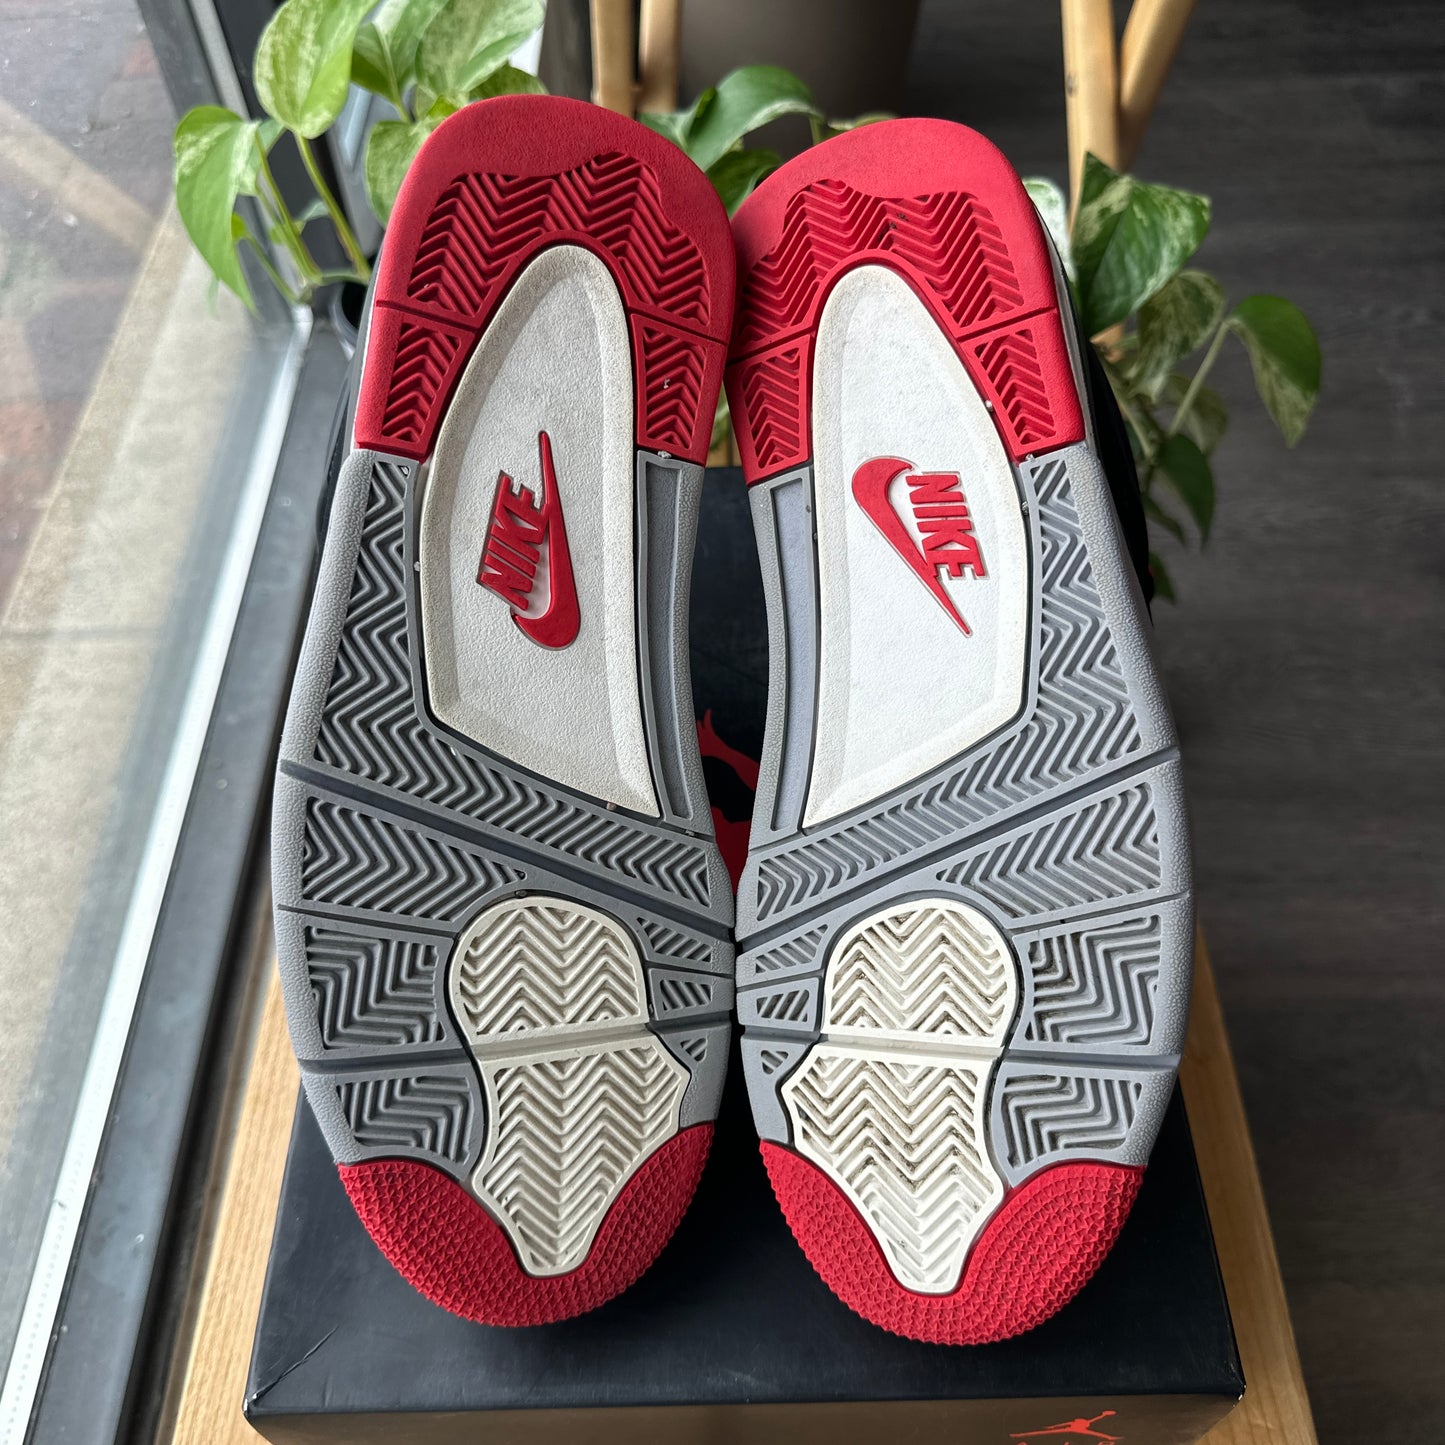 Air Jordan 4 "Bred" Size 10